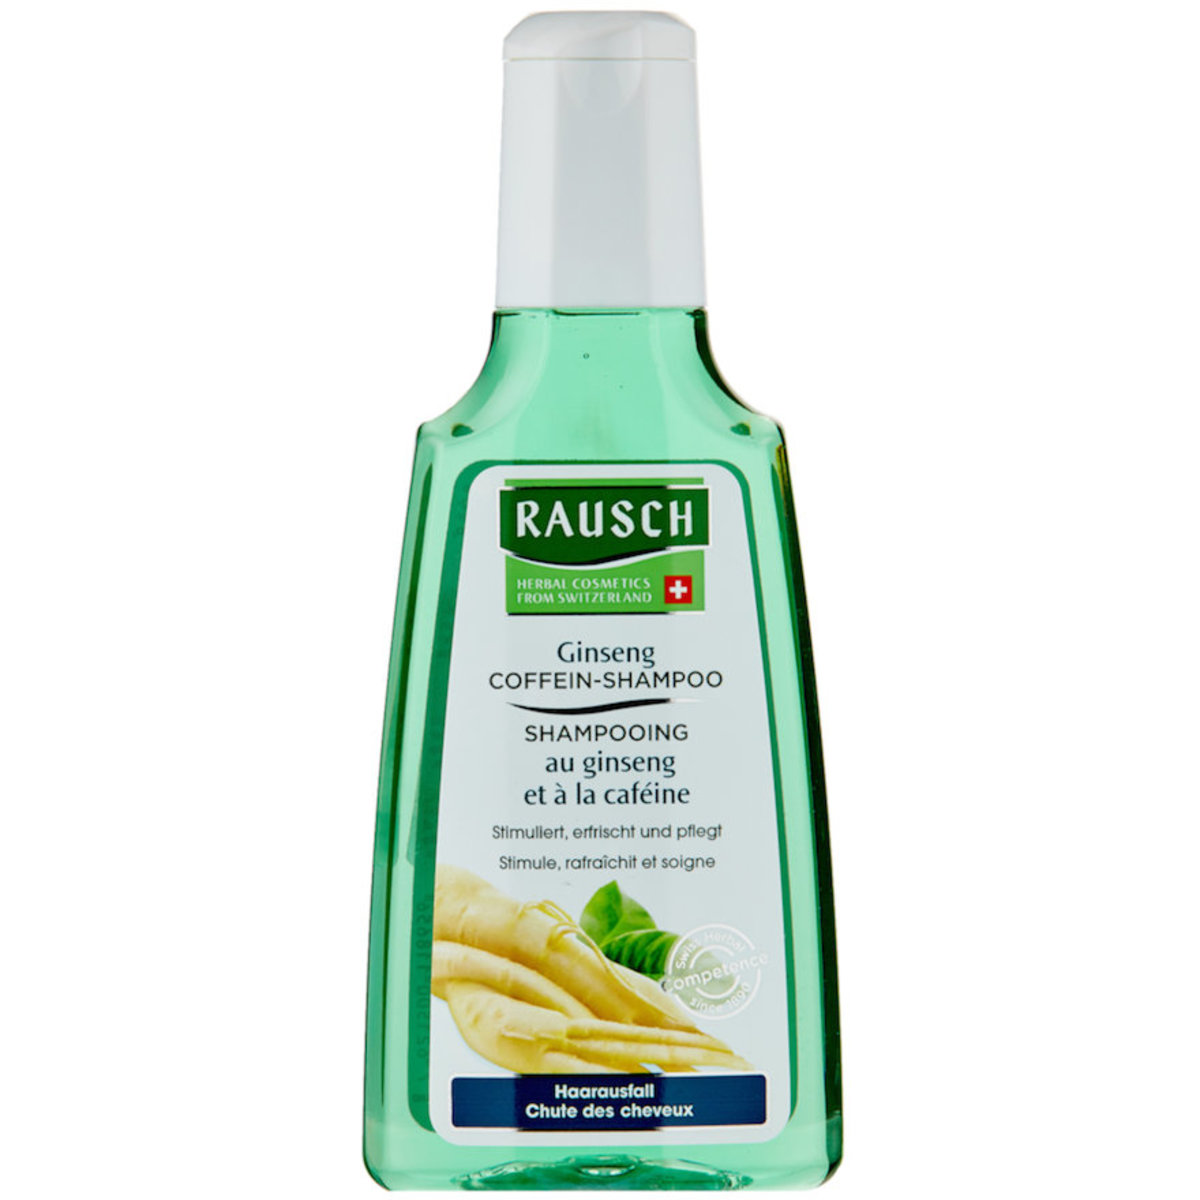 Rausch Rausch Ginseng Caffeine Shampoo 0 Ml Parallel Import Hktvmall Online Shopping